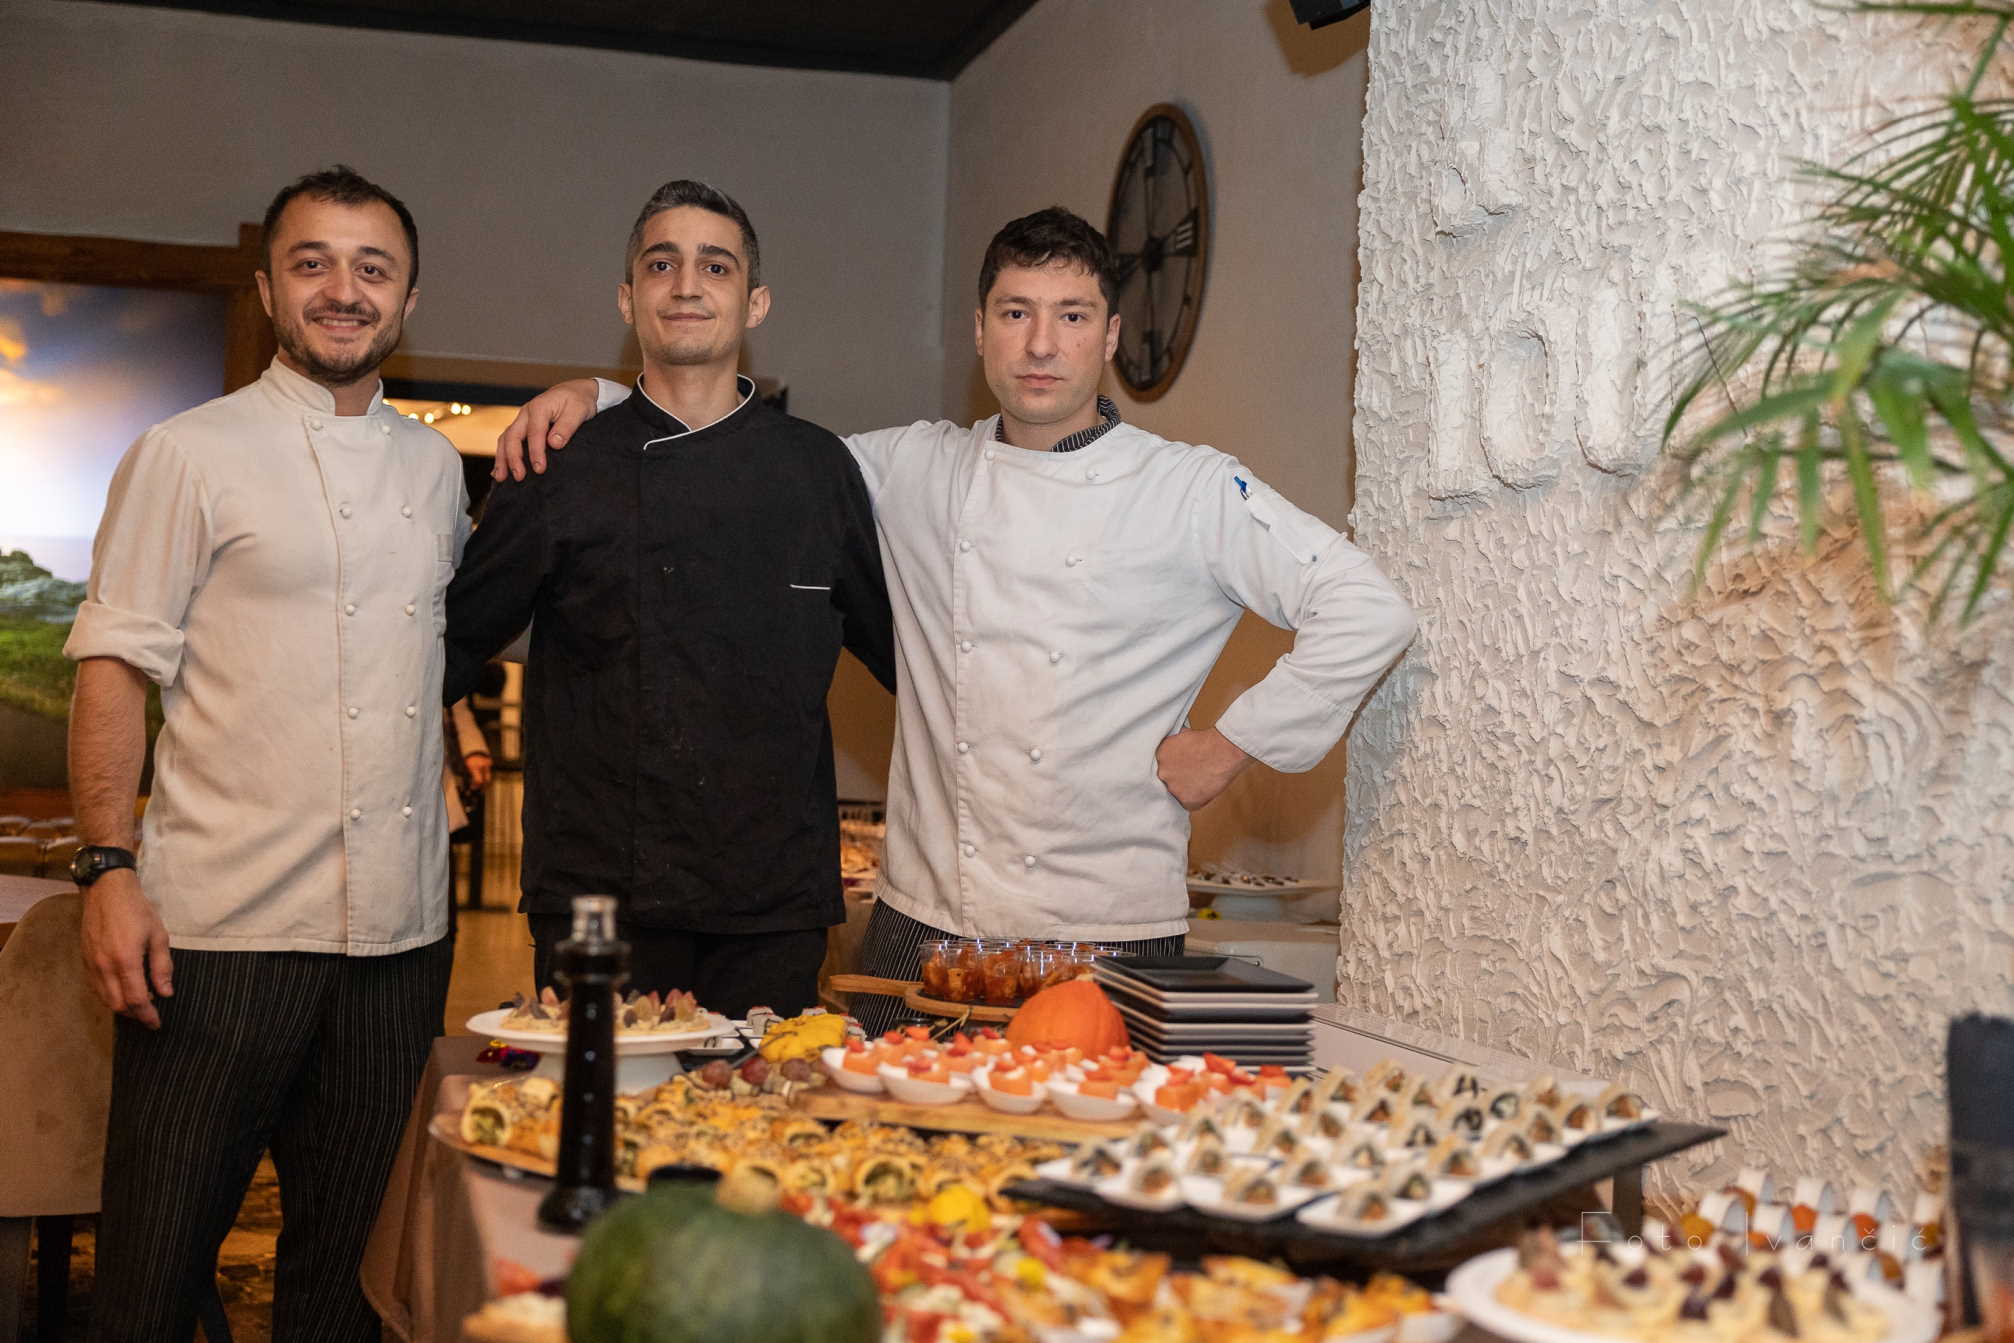 Sinoć je obitelj Gajić proslavila 47 godina svoje ugostiteljske tradicije u Faro baru u Dramlju